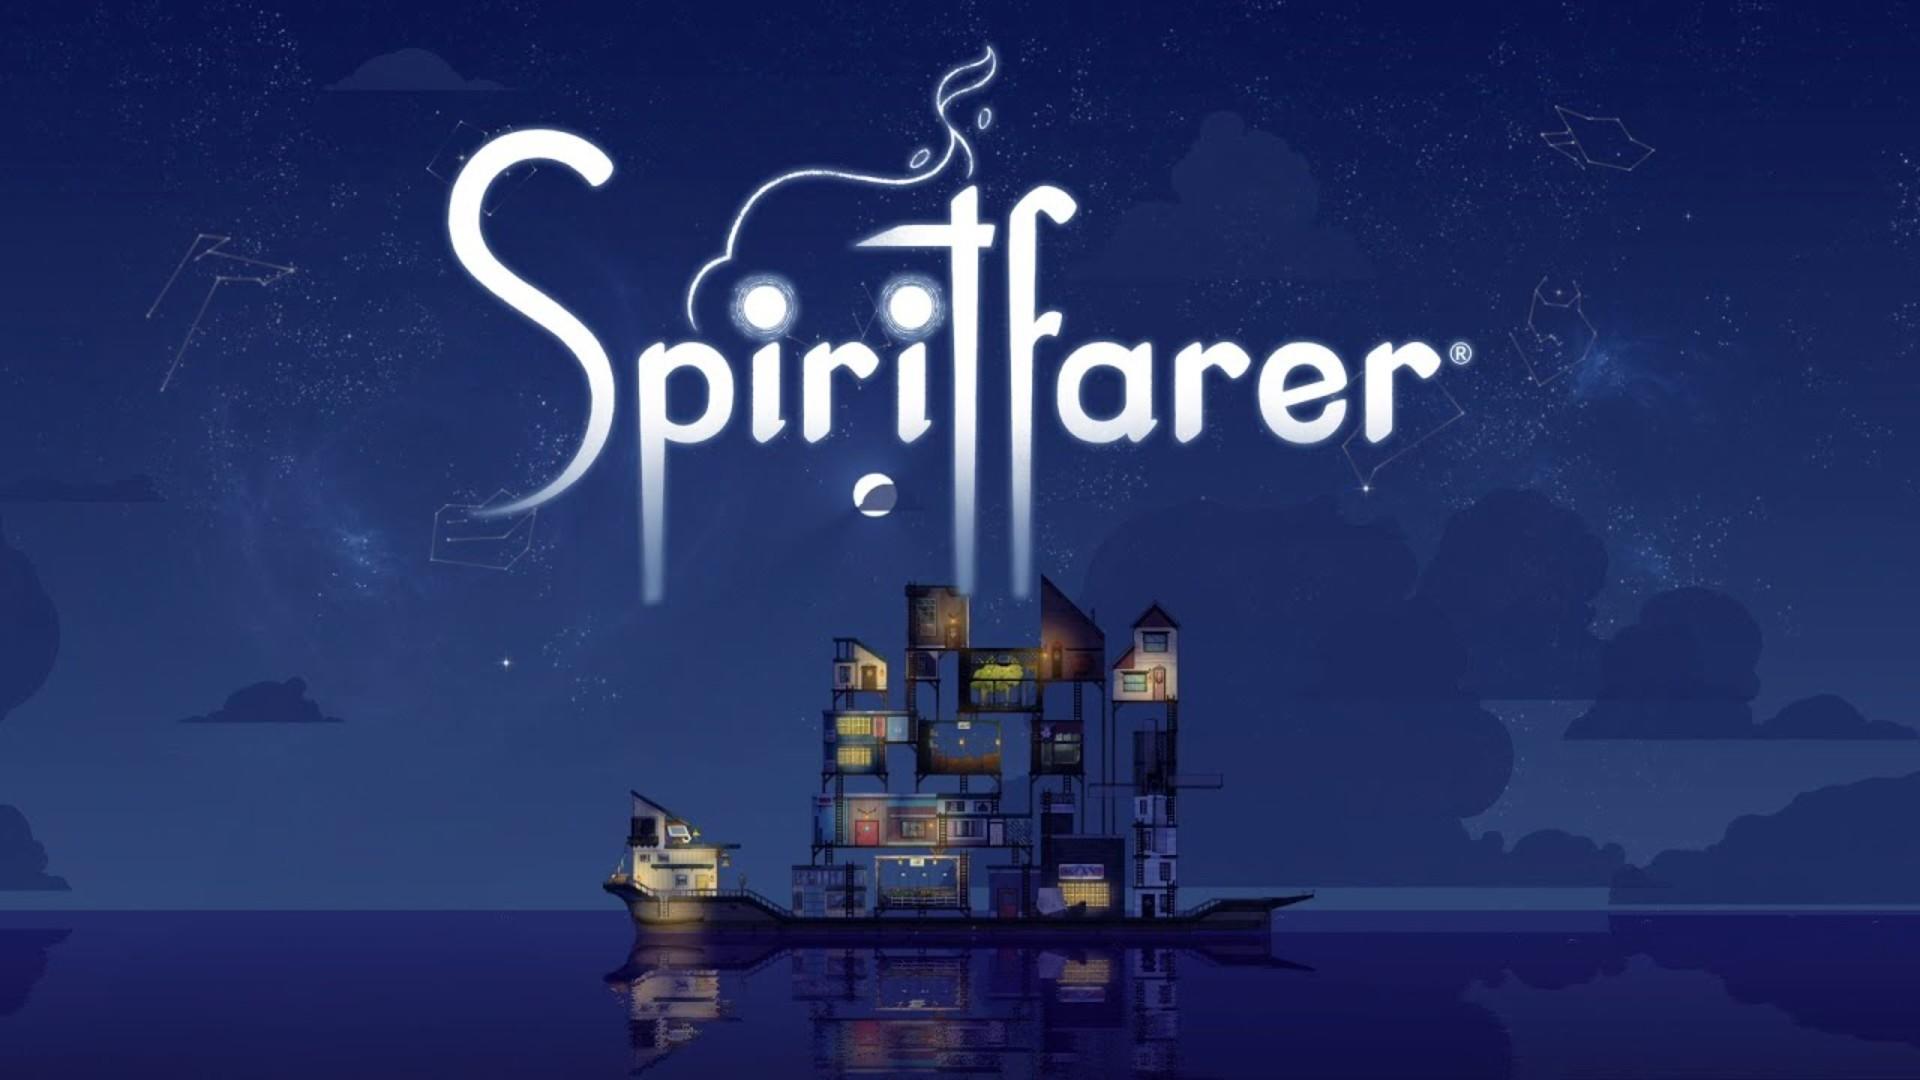 Banner of Edisi Spiritfarer Netflix 1.5.3